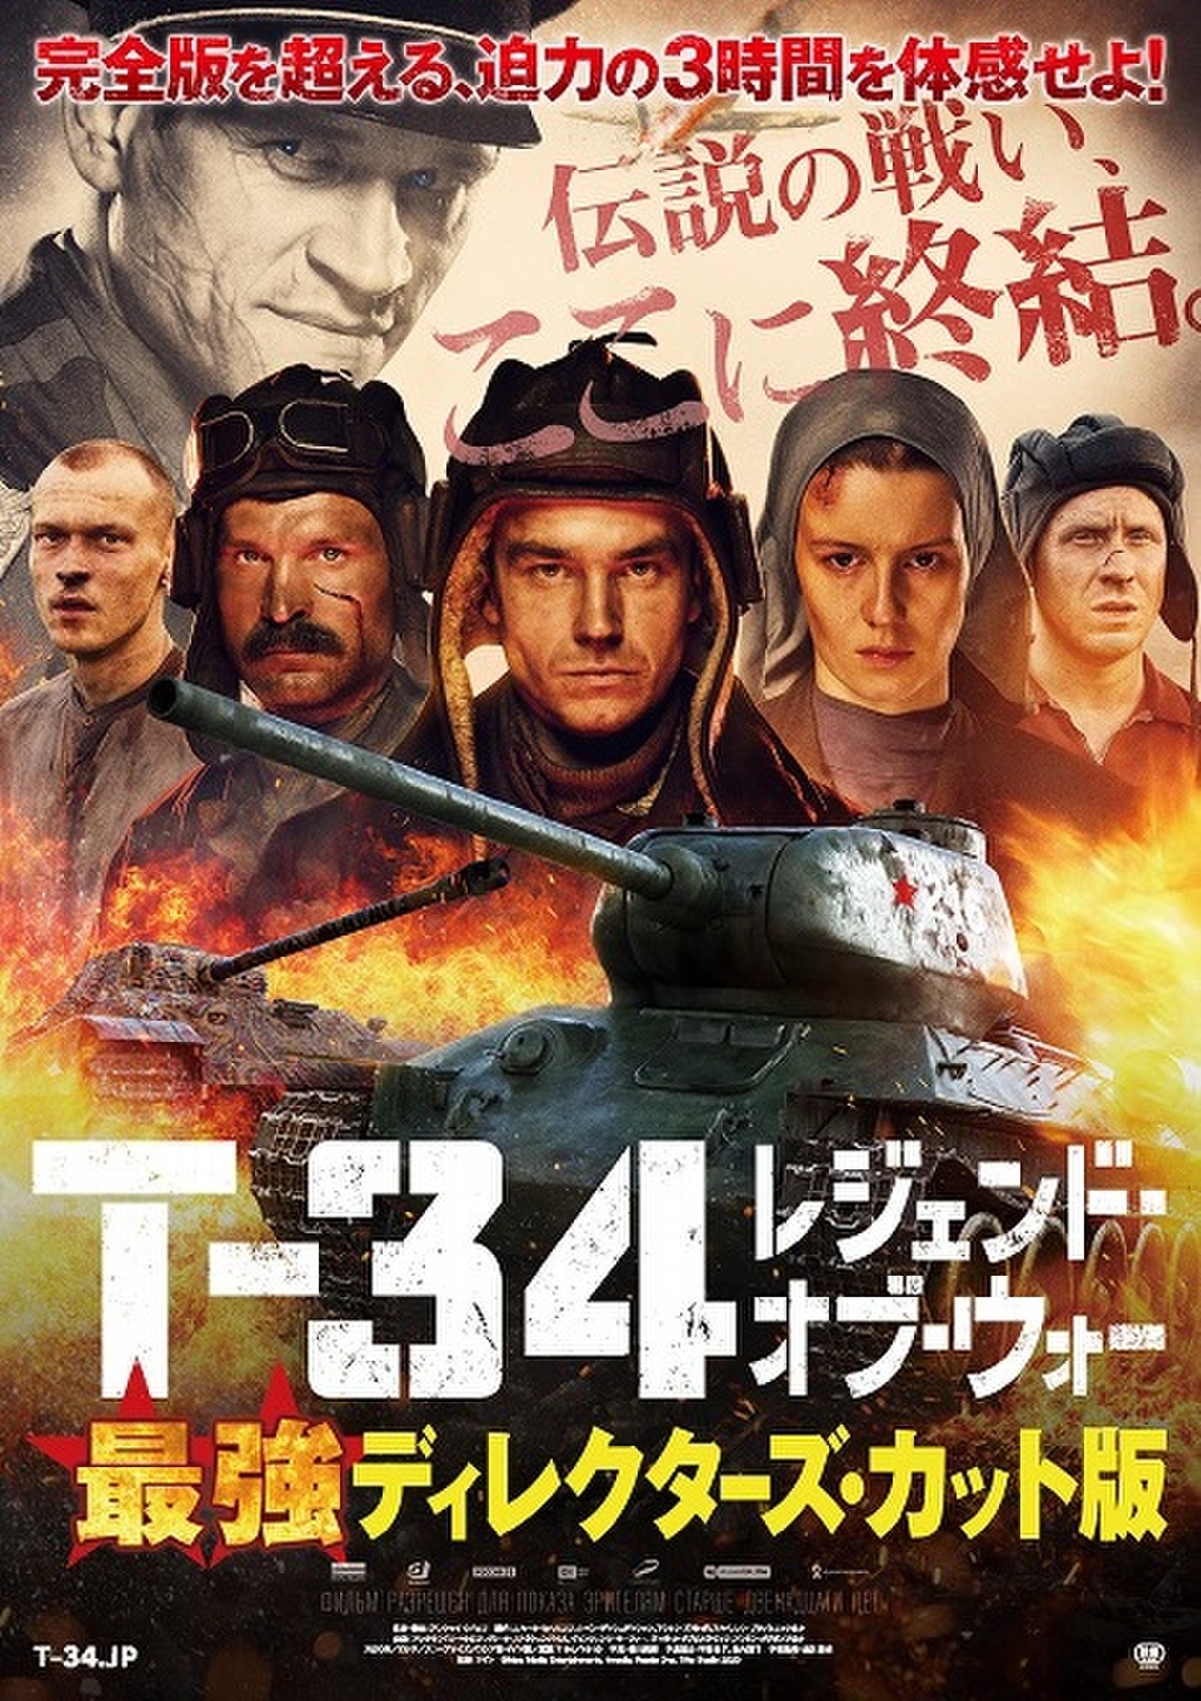 最長の3時間11分 T 34 最強ディレクターズ カット版 7月31日公開決定 映画ニュース 映画 Com